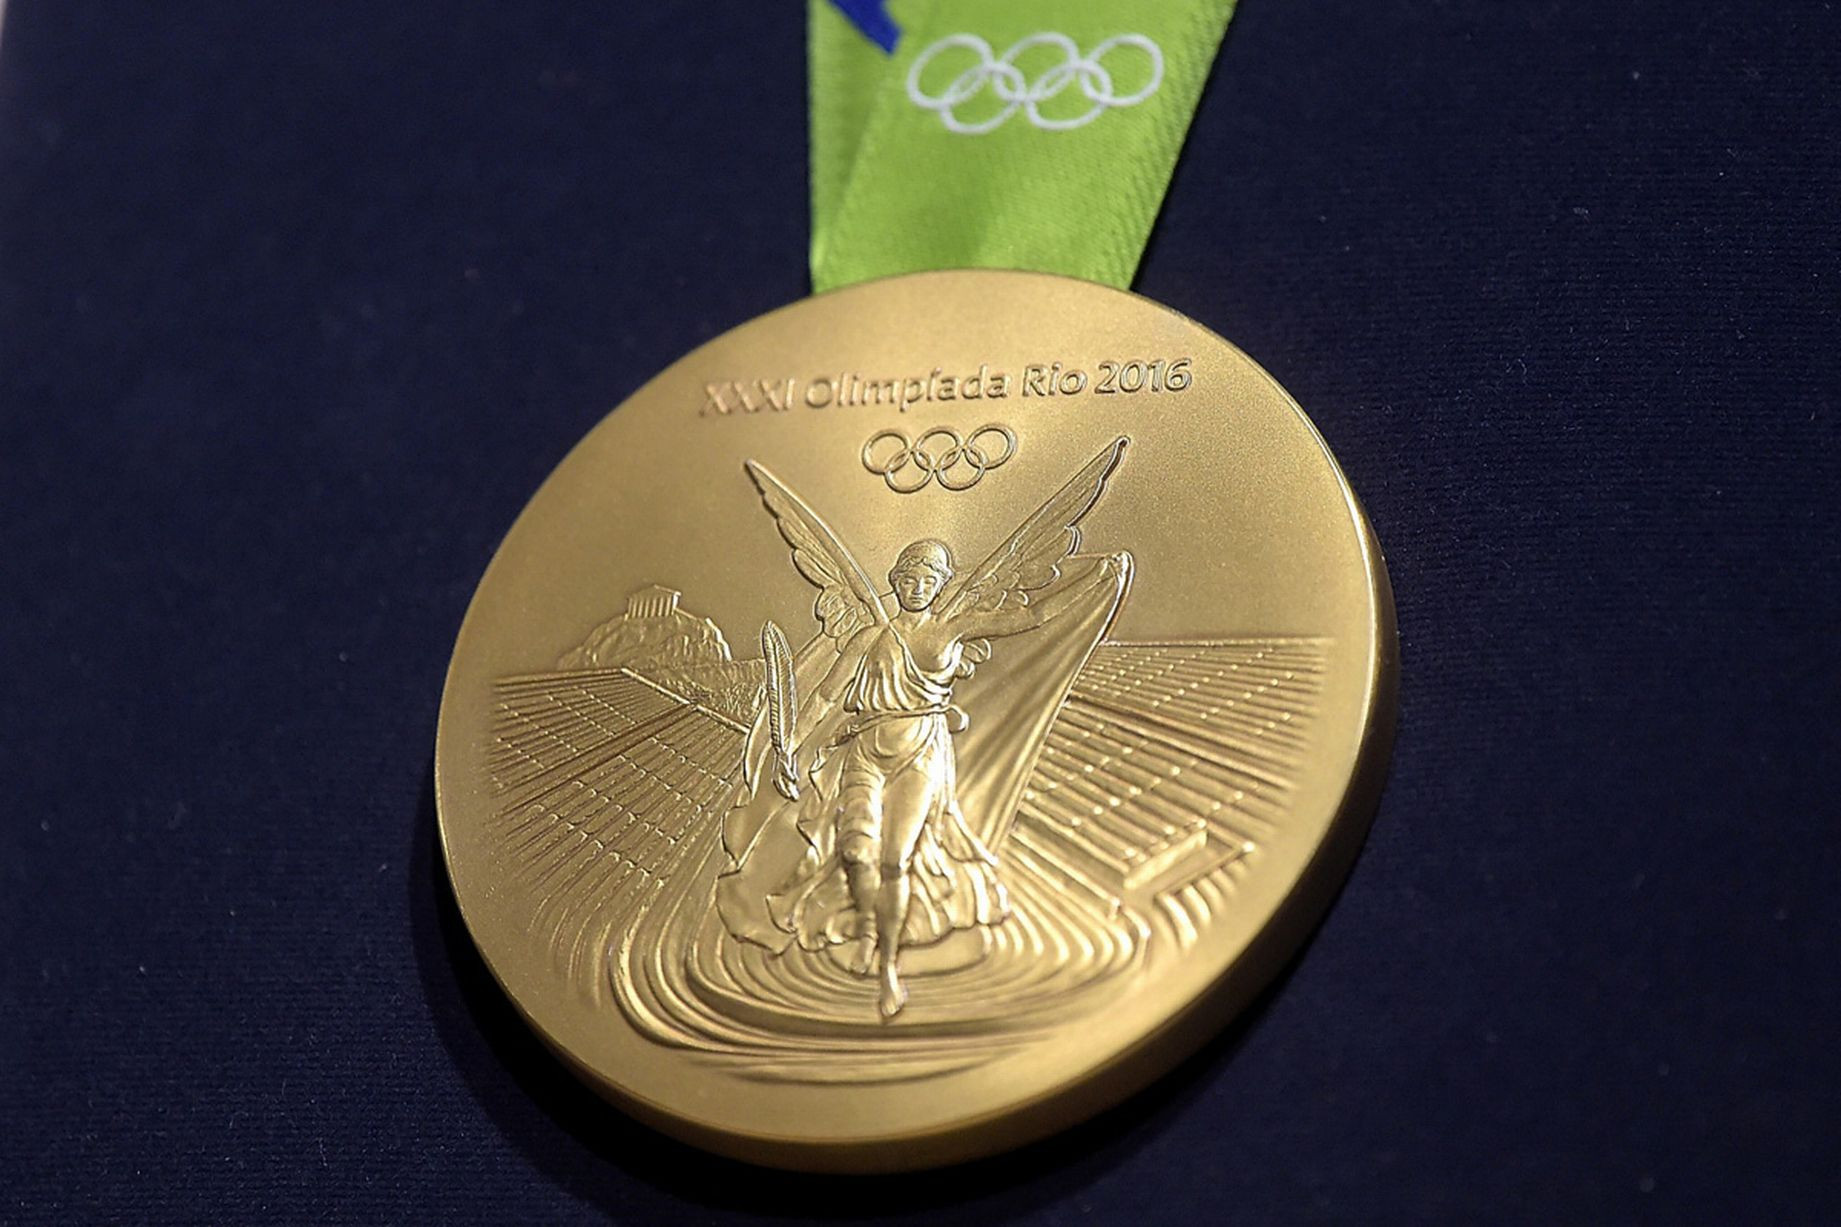 Οι πέντε χώρες που πήραν για πρώτη φορά χρυσό μετάλλιο στο Ρίο